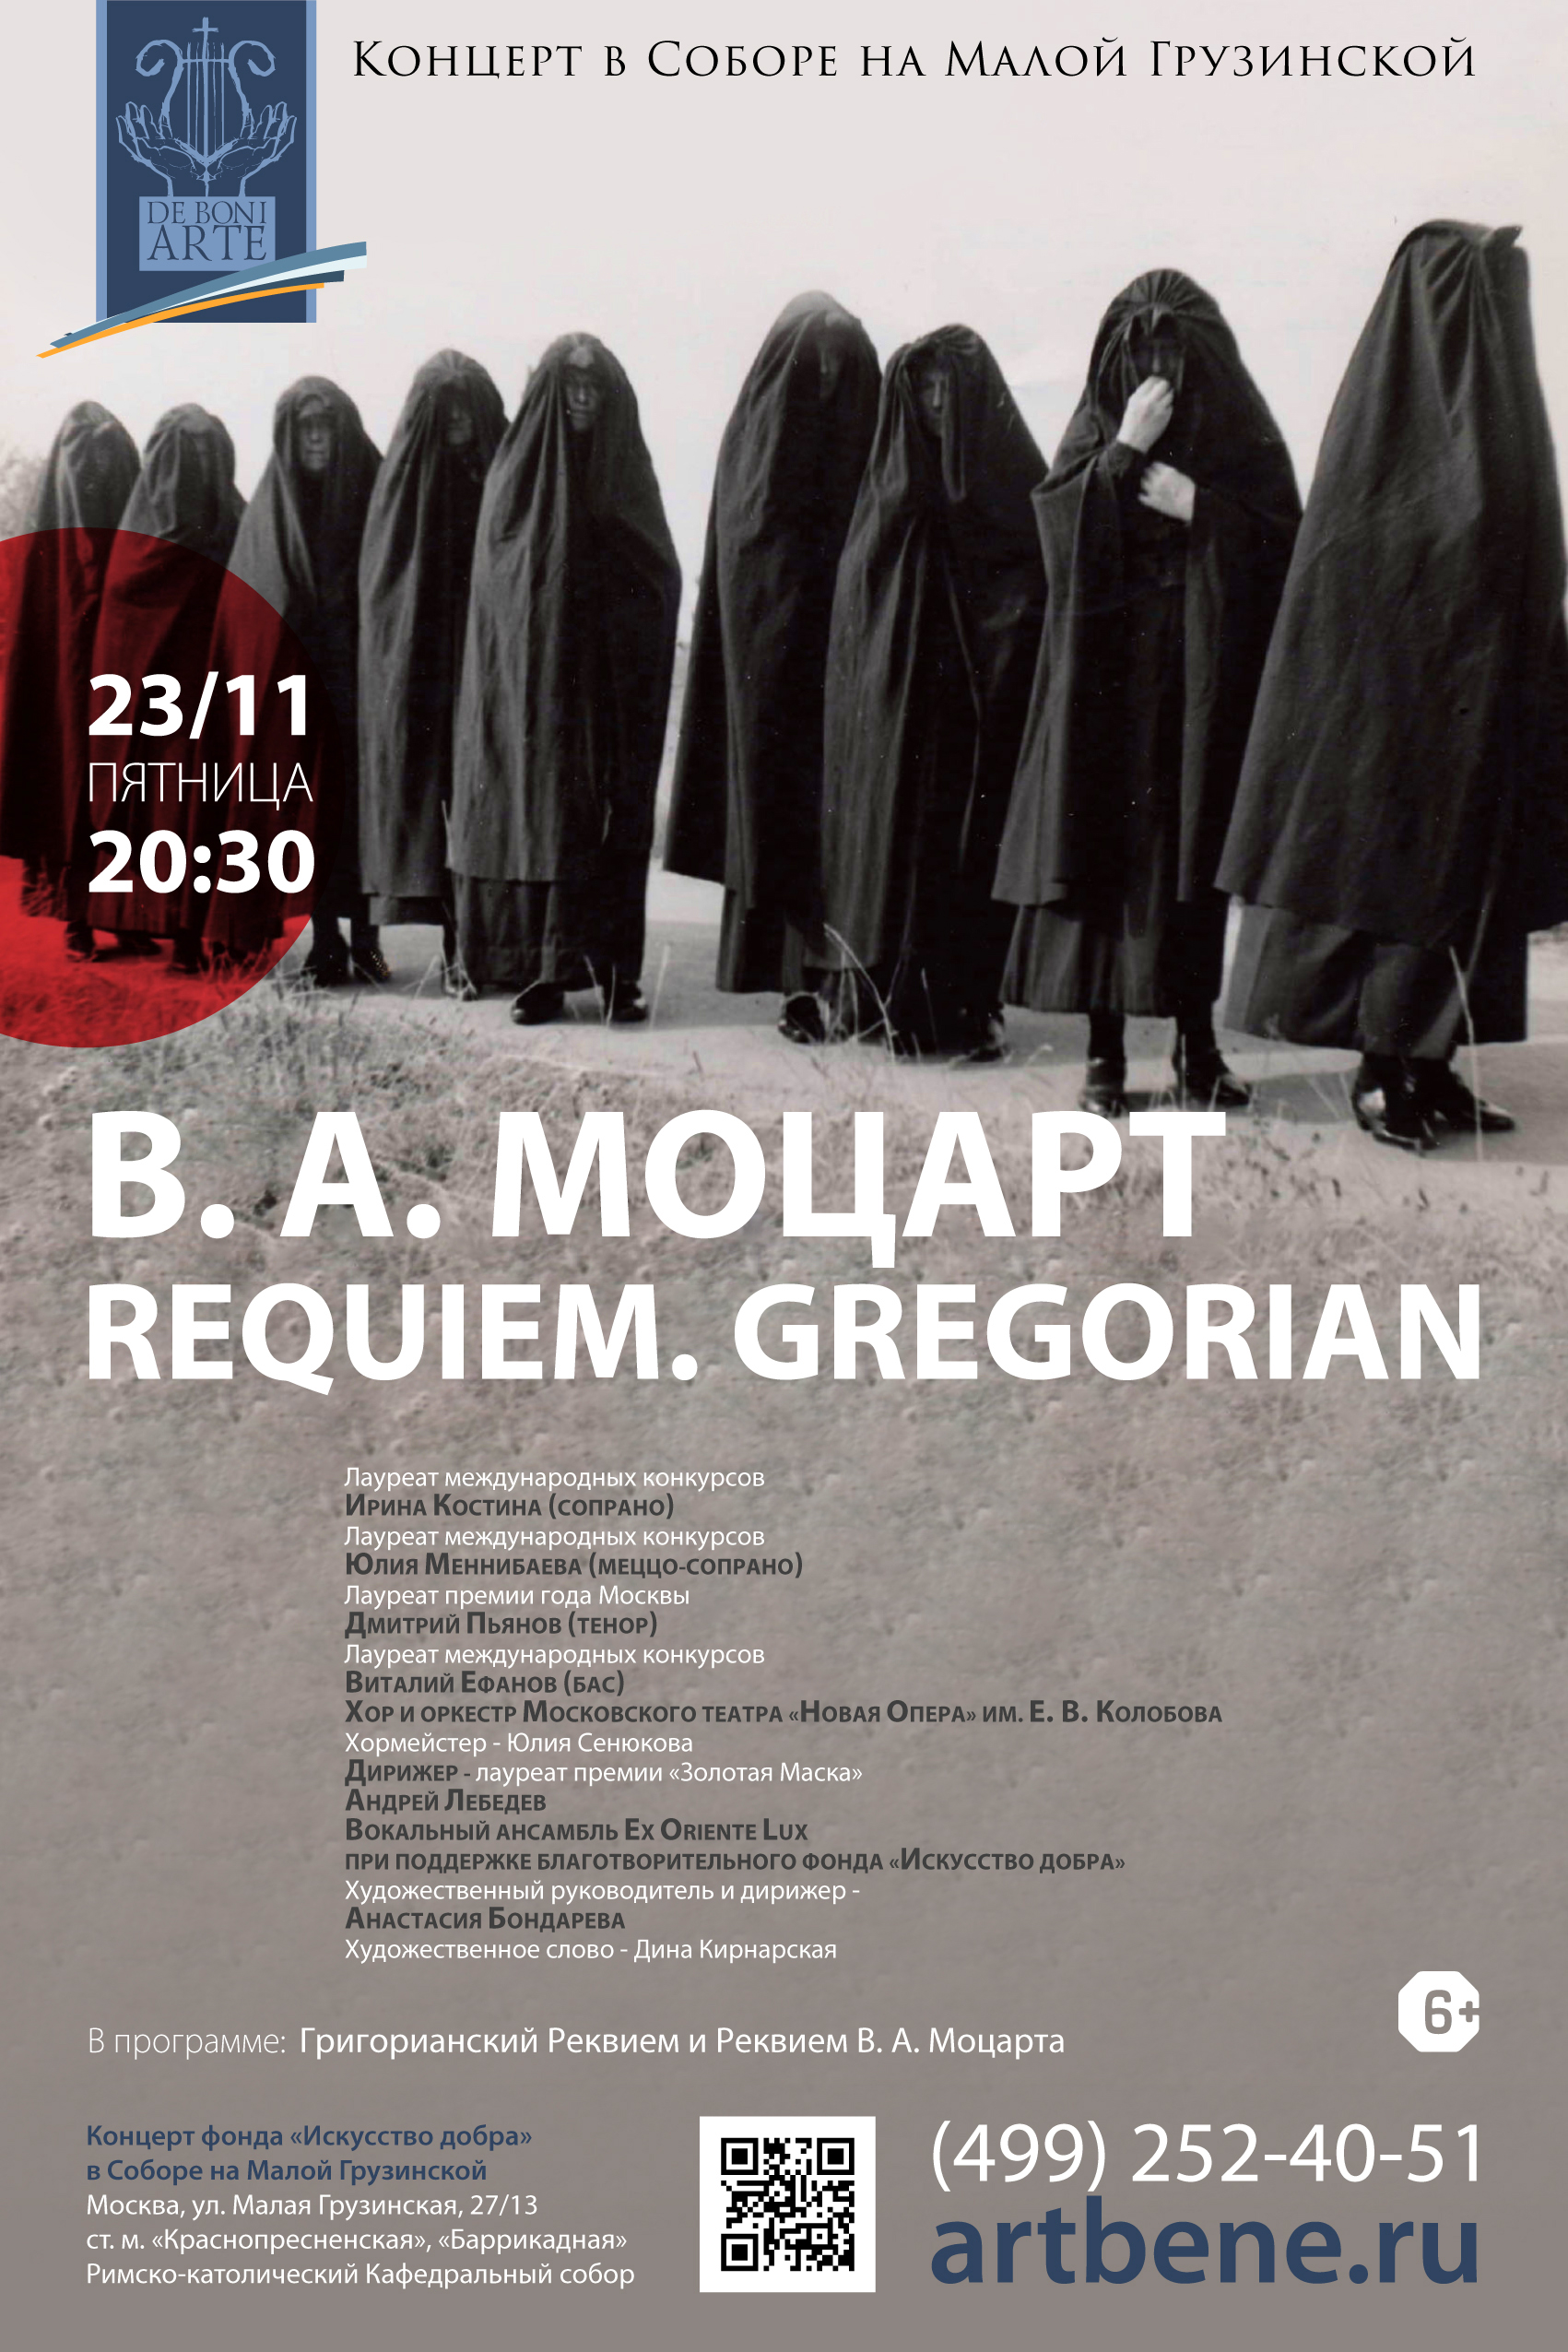 Концерт «В. А. Моцарт. Requiem. Gregorian» – события на сайте «Московские Сезоны»